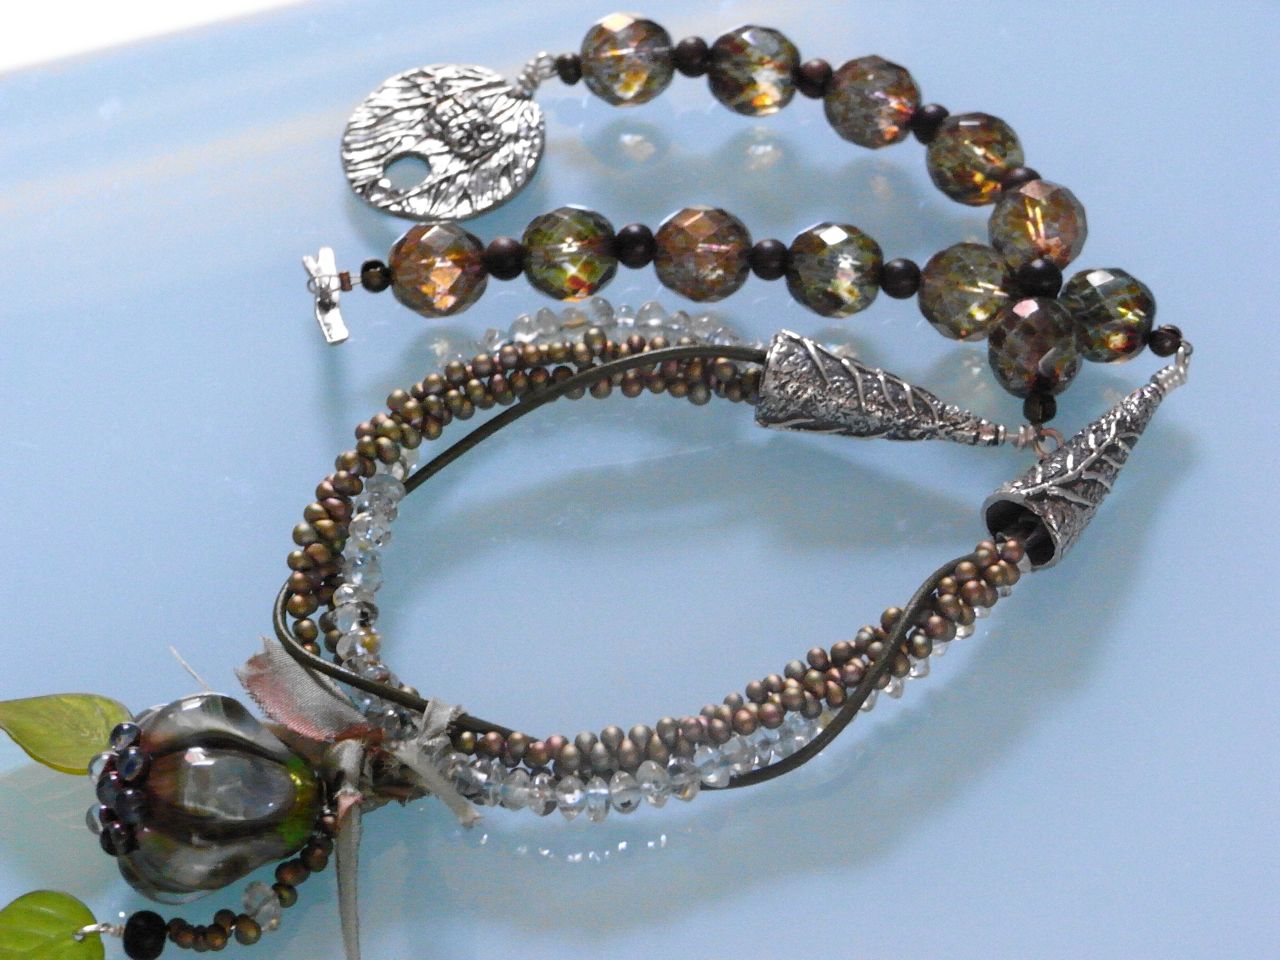 Jenni's beads: January 2011